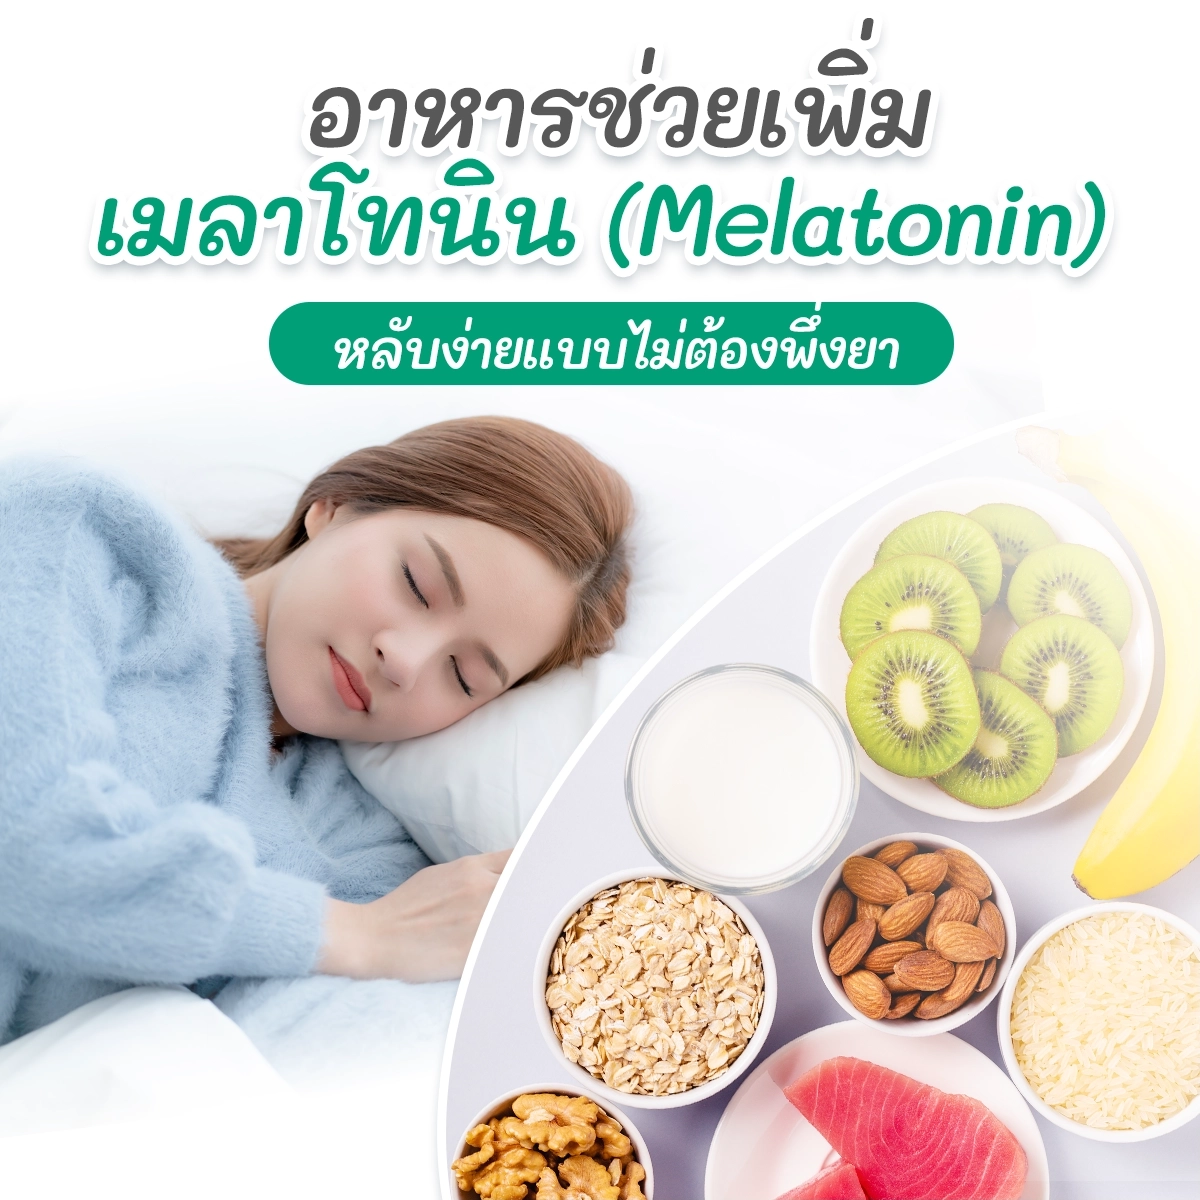 อาหารช่วยเพิ่มเมลาโทนิน (Melatonin)